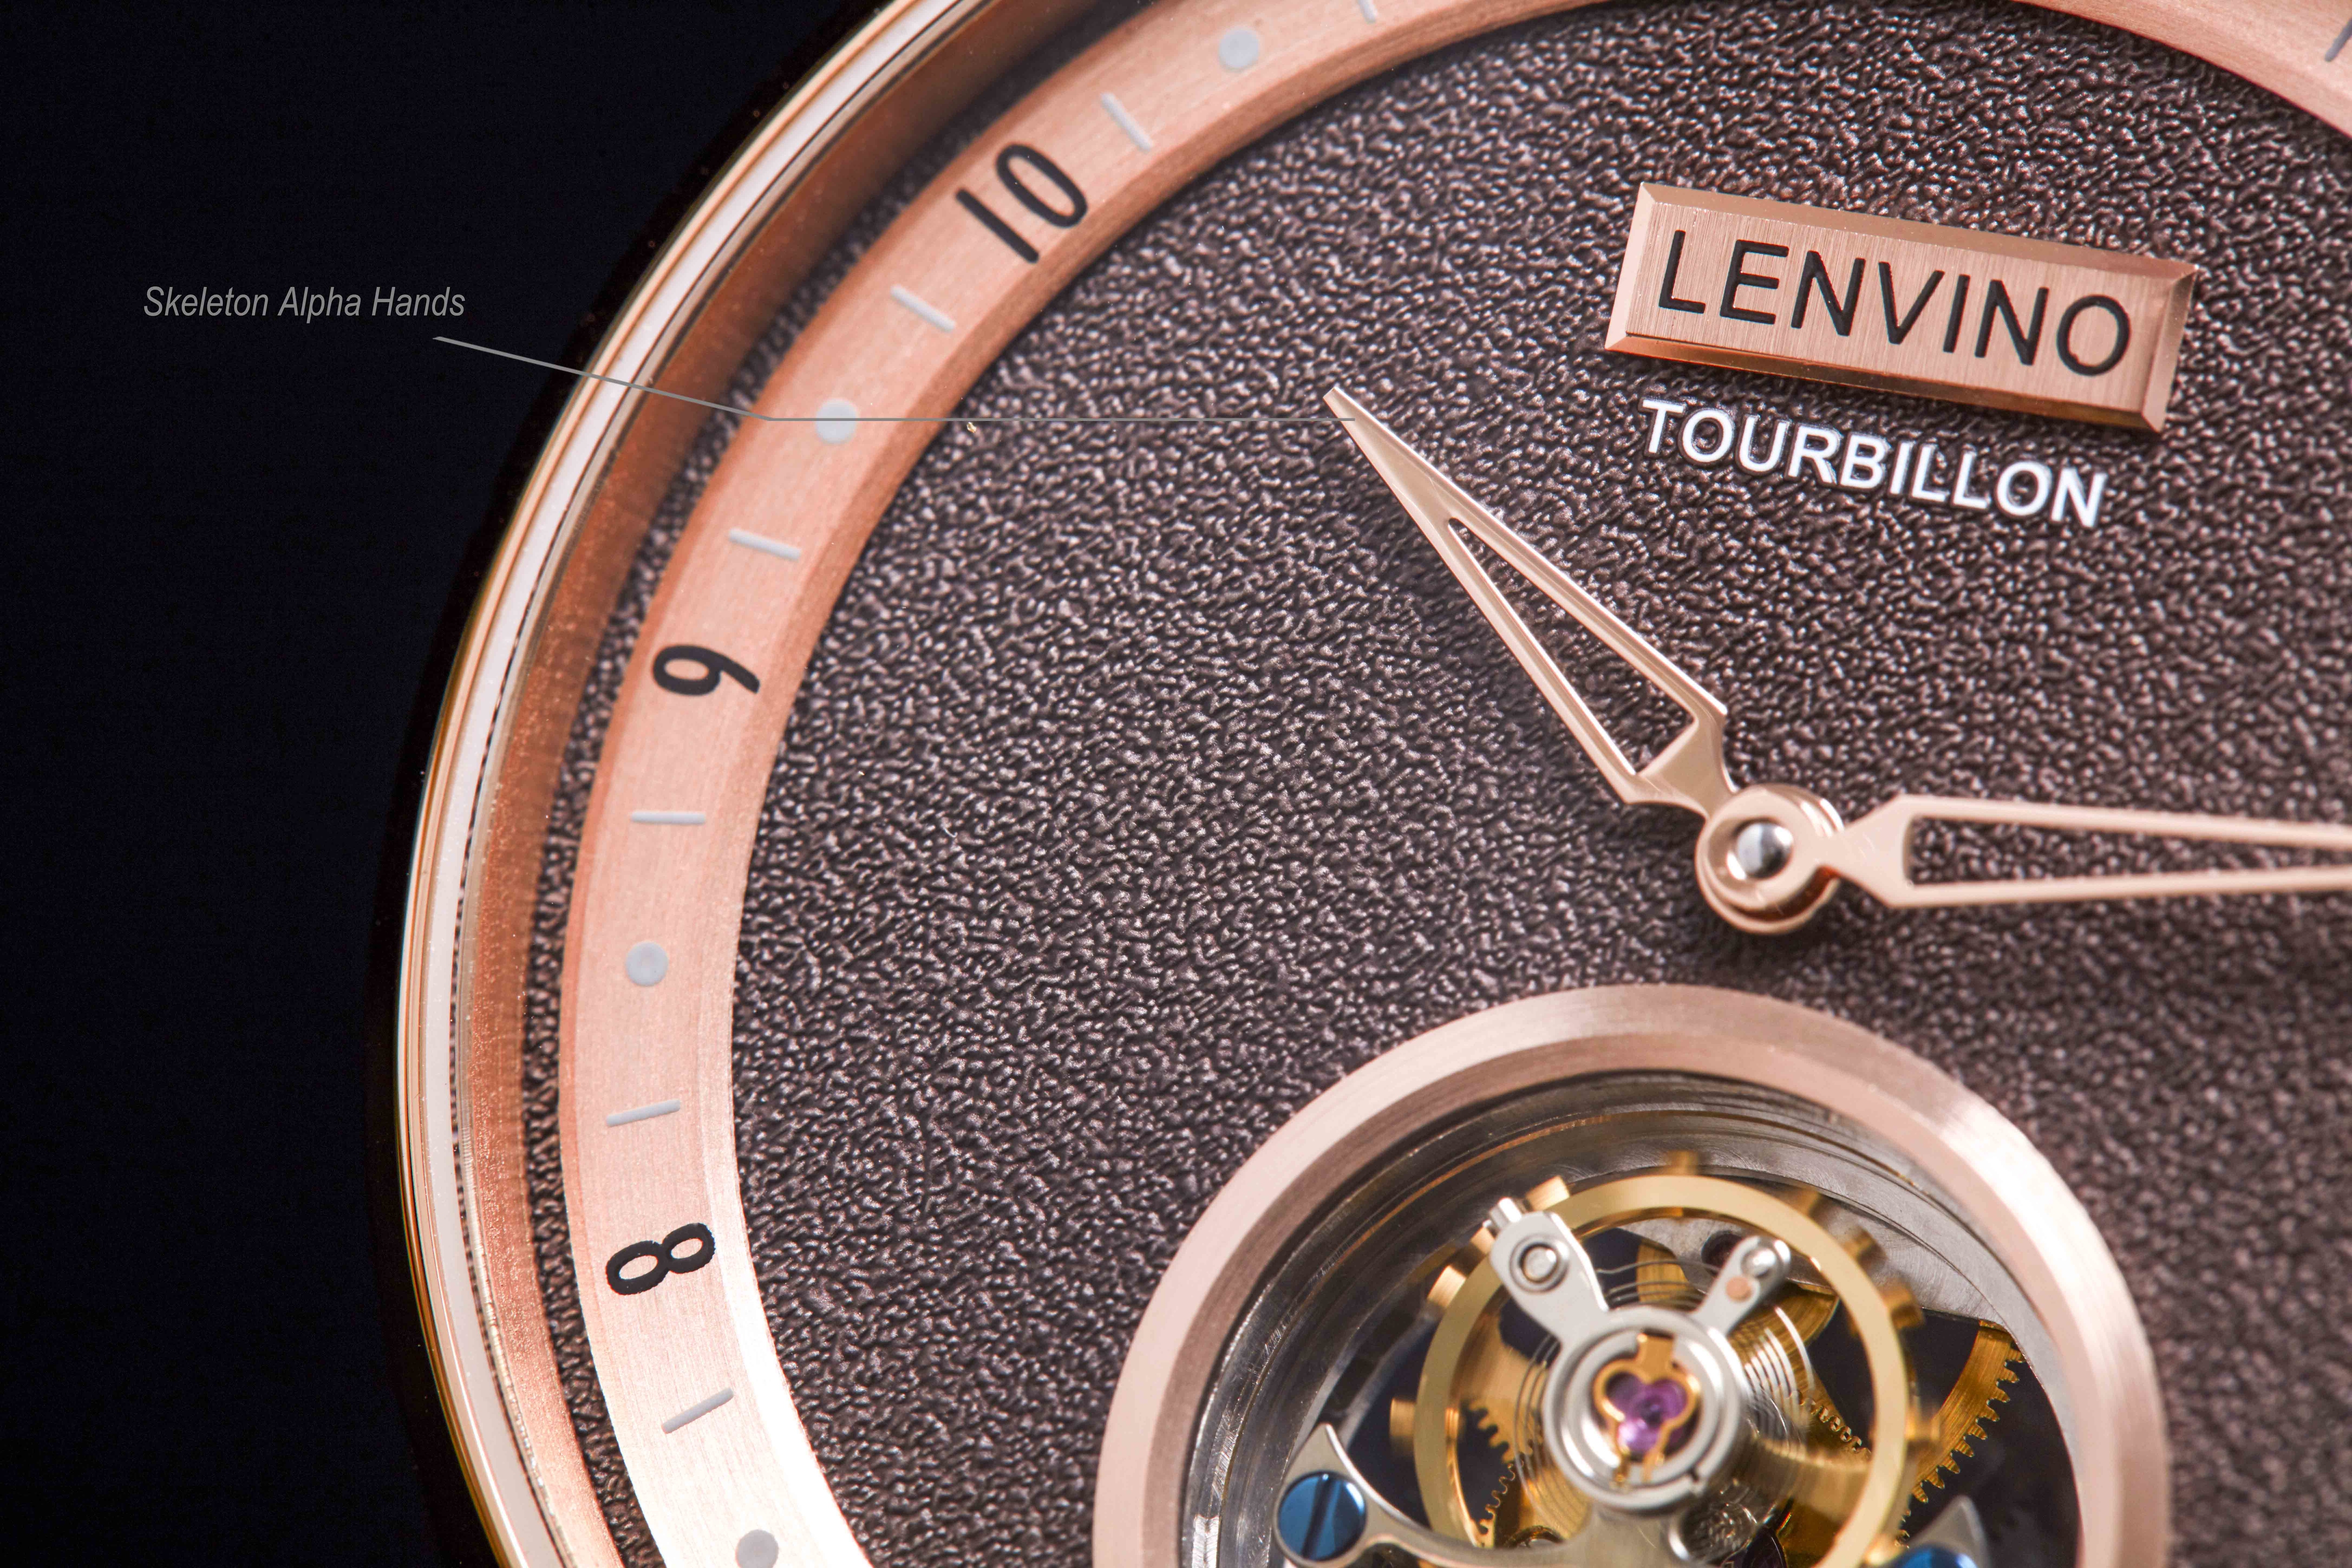 lenvino 「Tour2」 トゥールビヨン - 時計